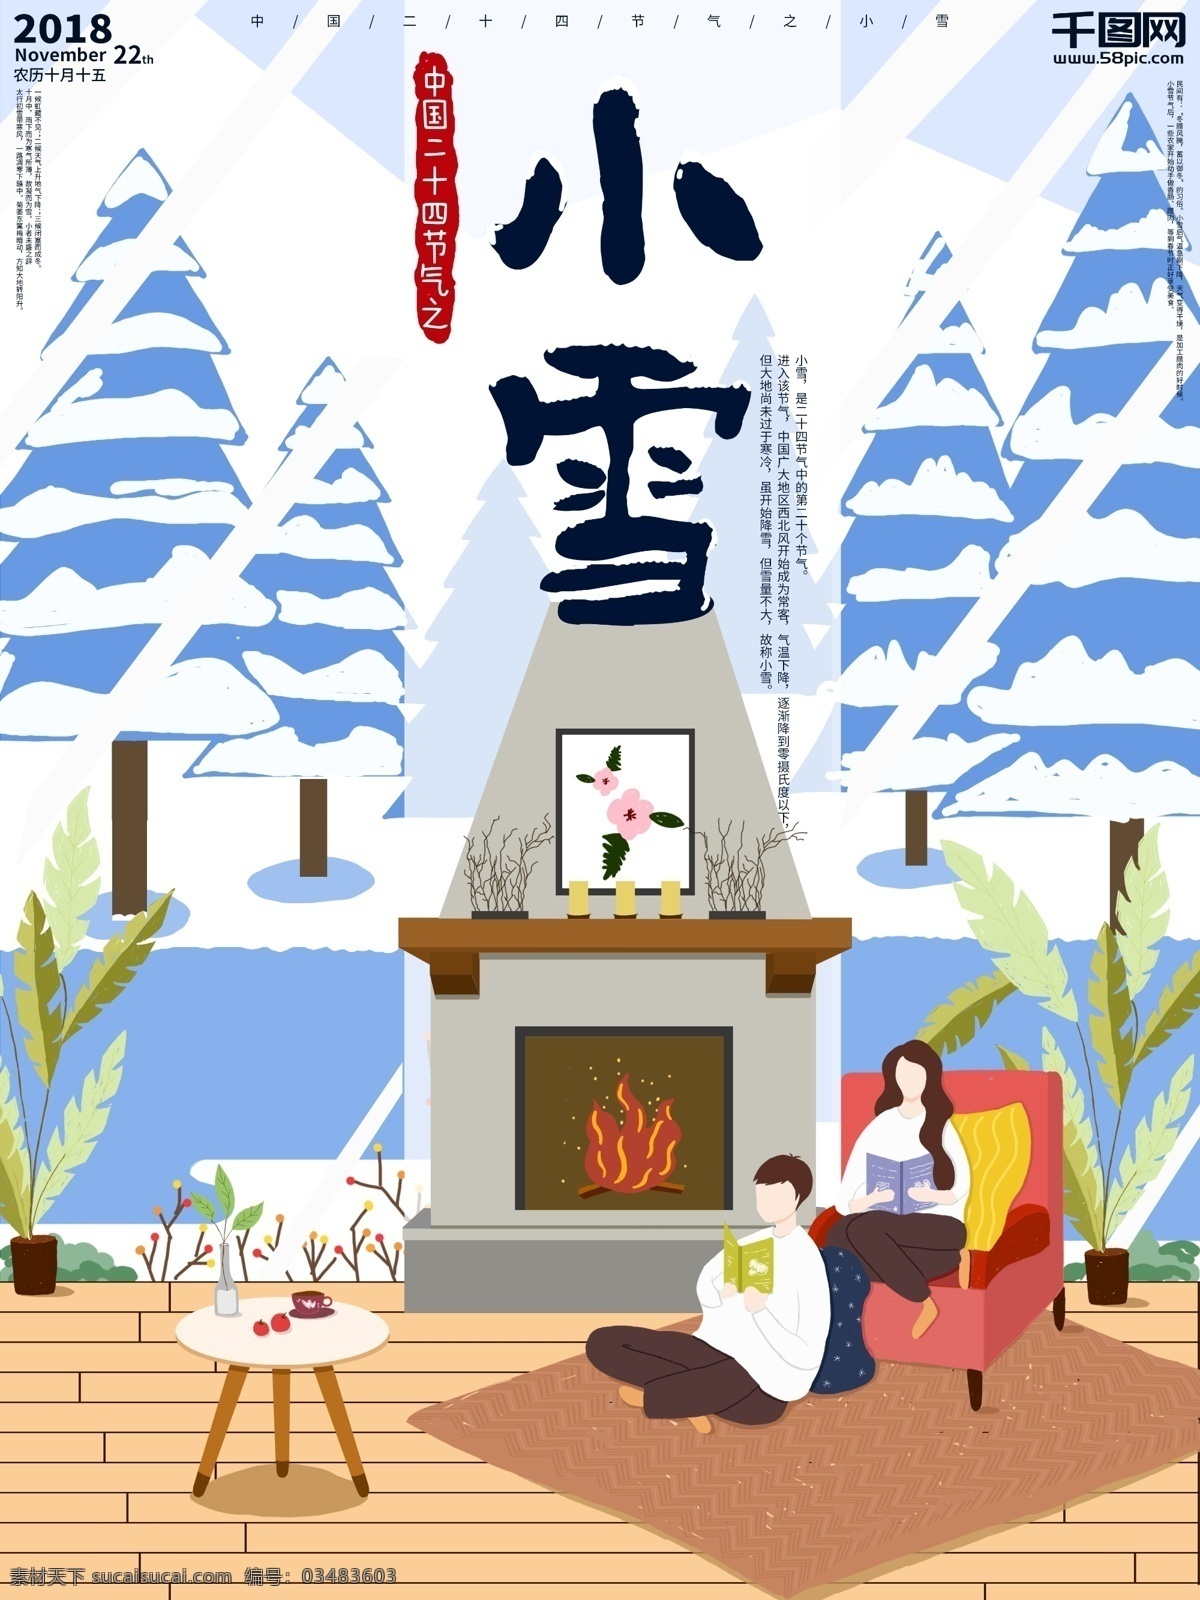 原创 手绘 中国 二十四节气 小雪 海报 展板 插画 节气